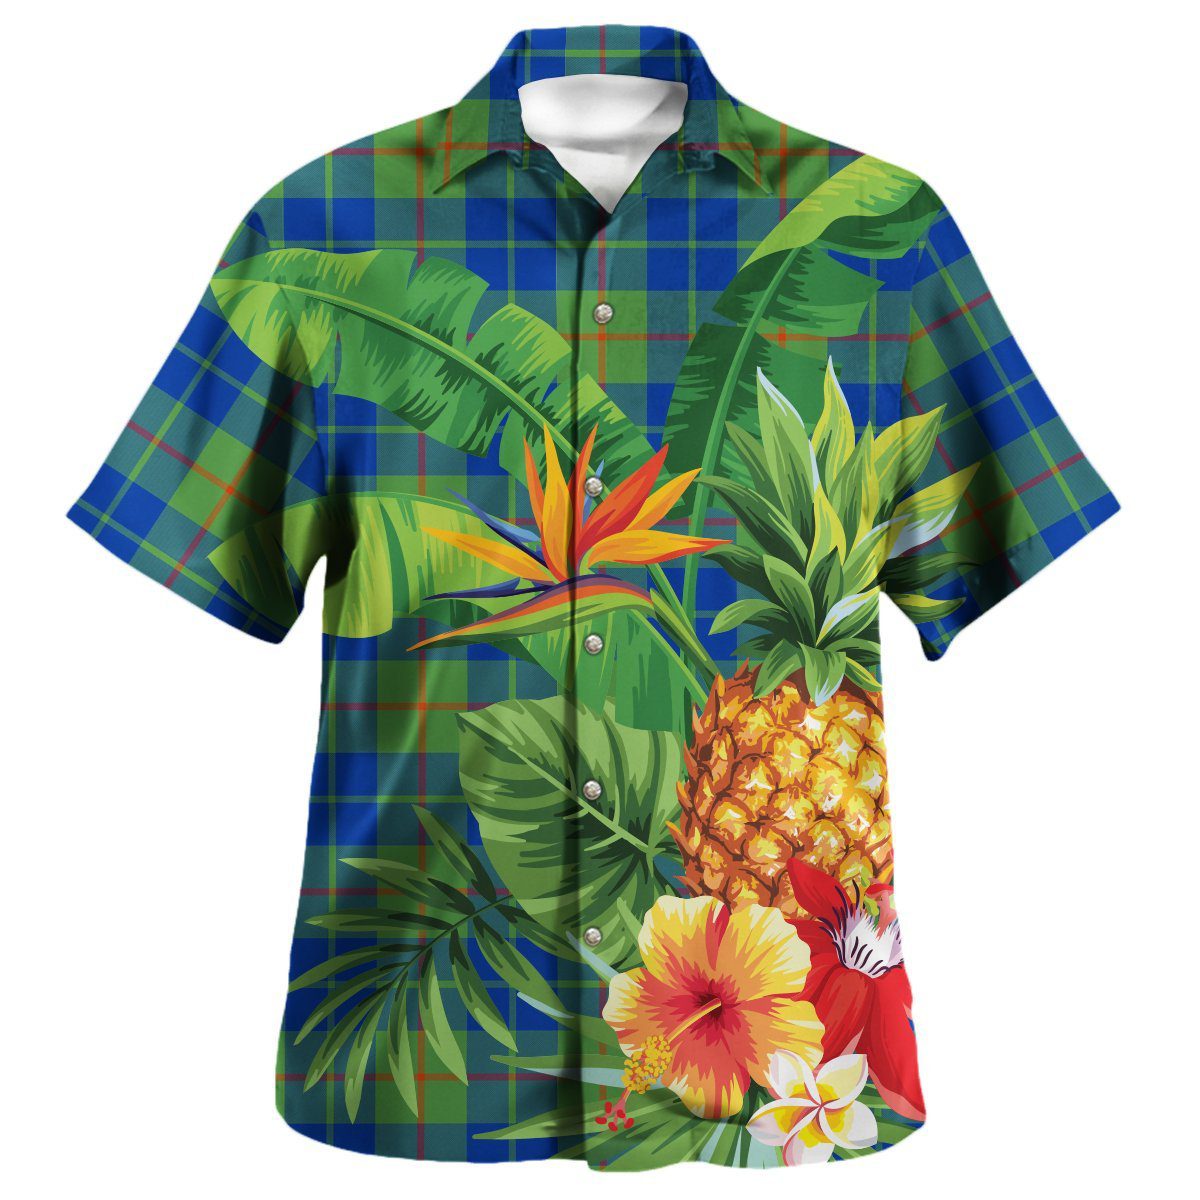 Baird Ancient Tartan Aloha Shirt version 2